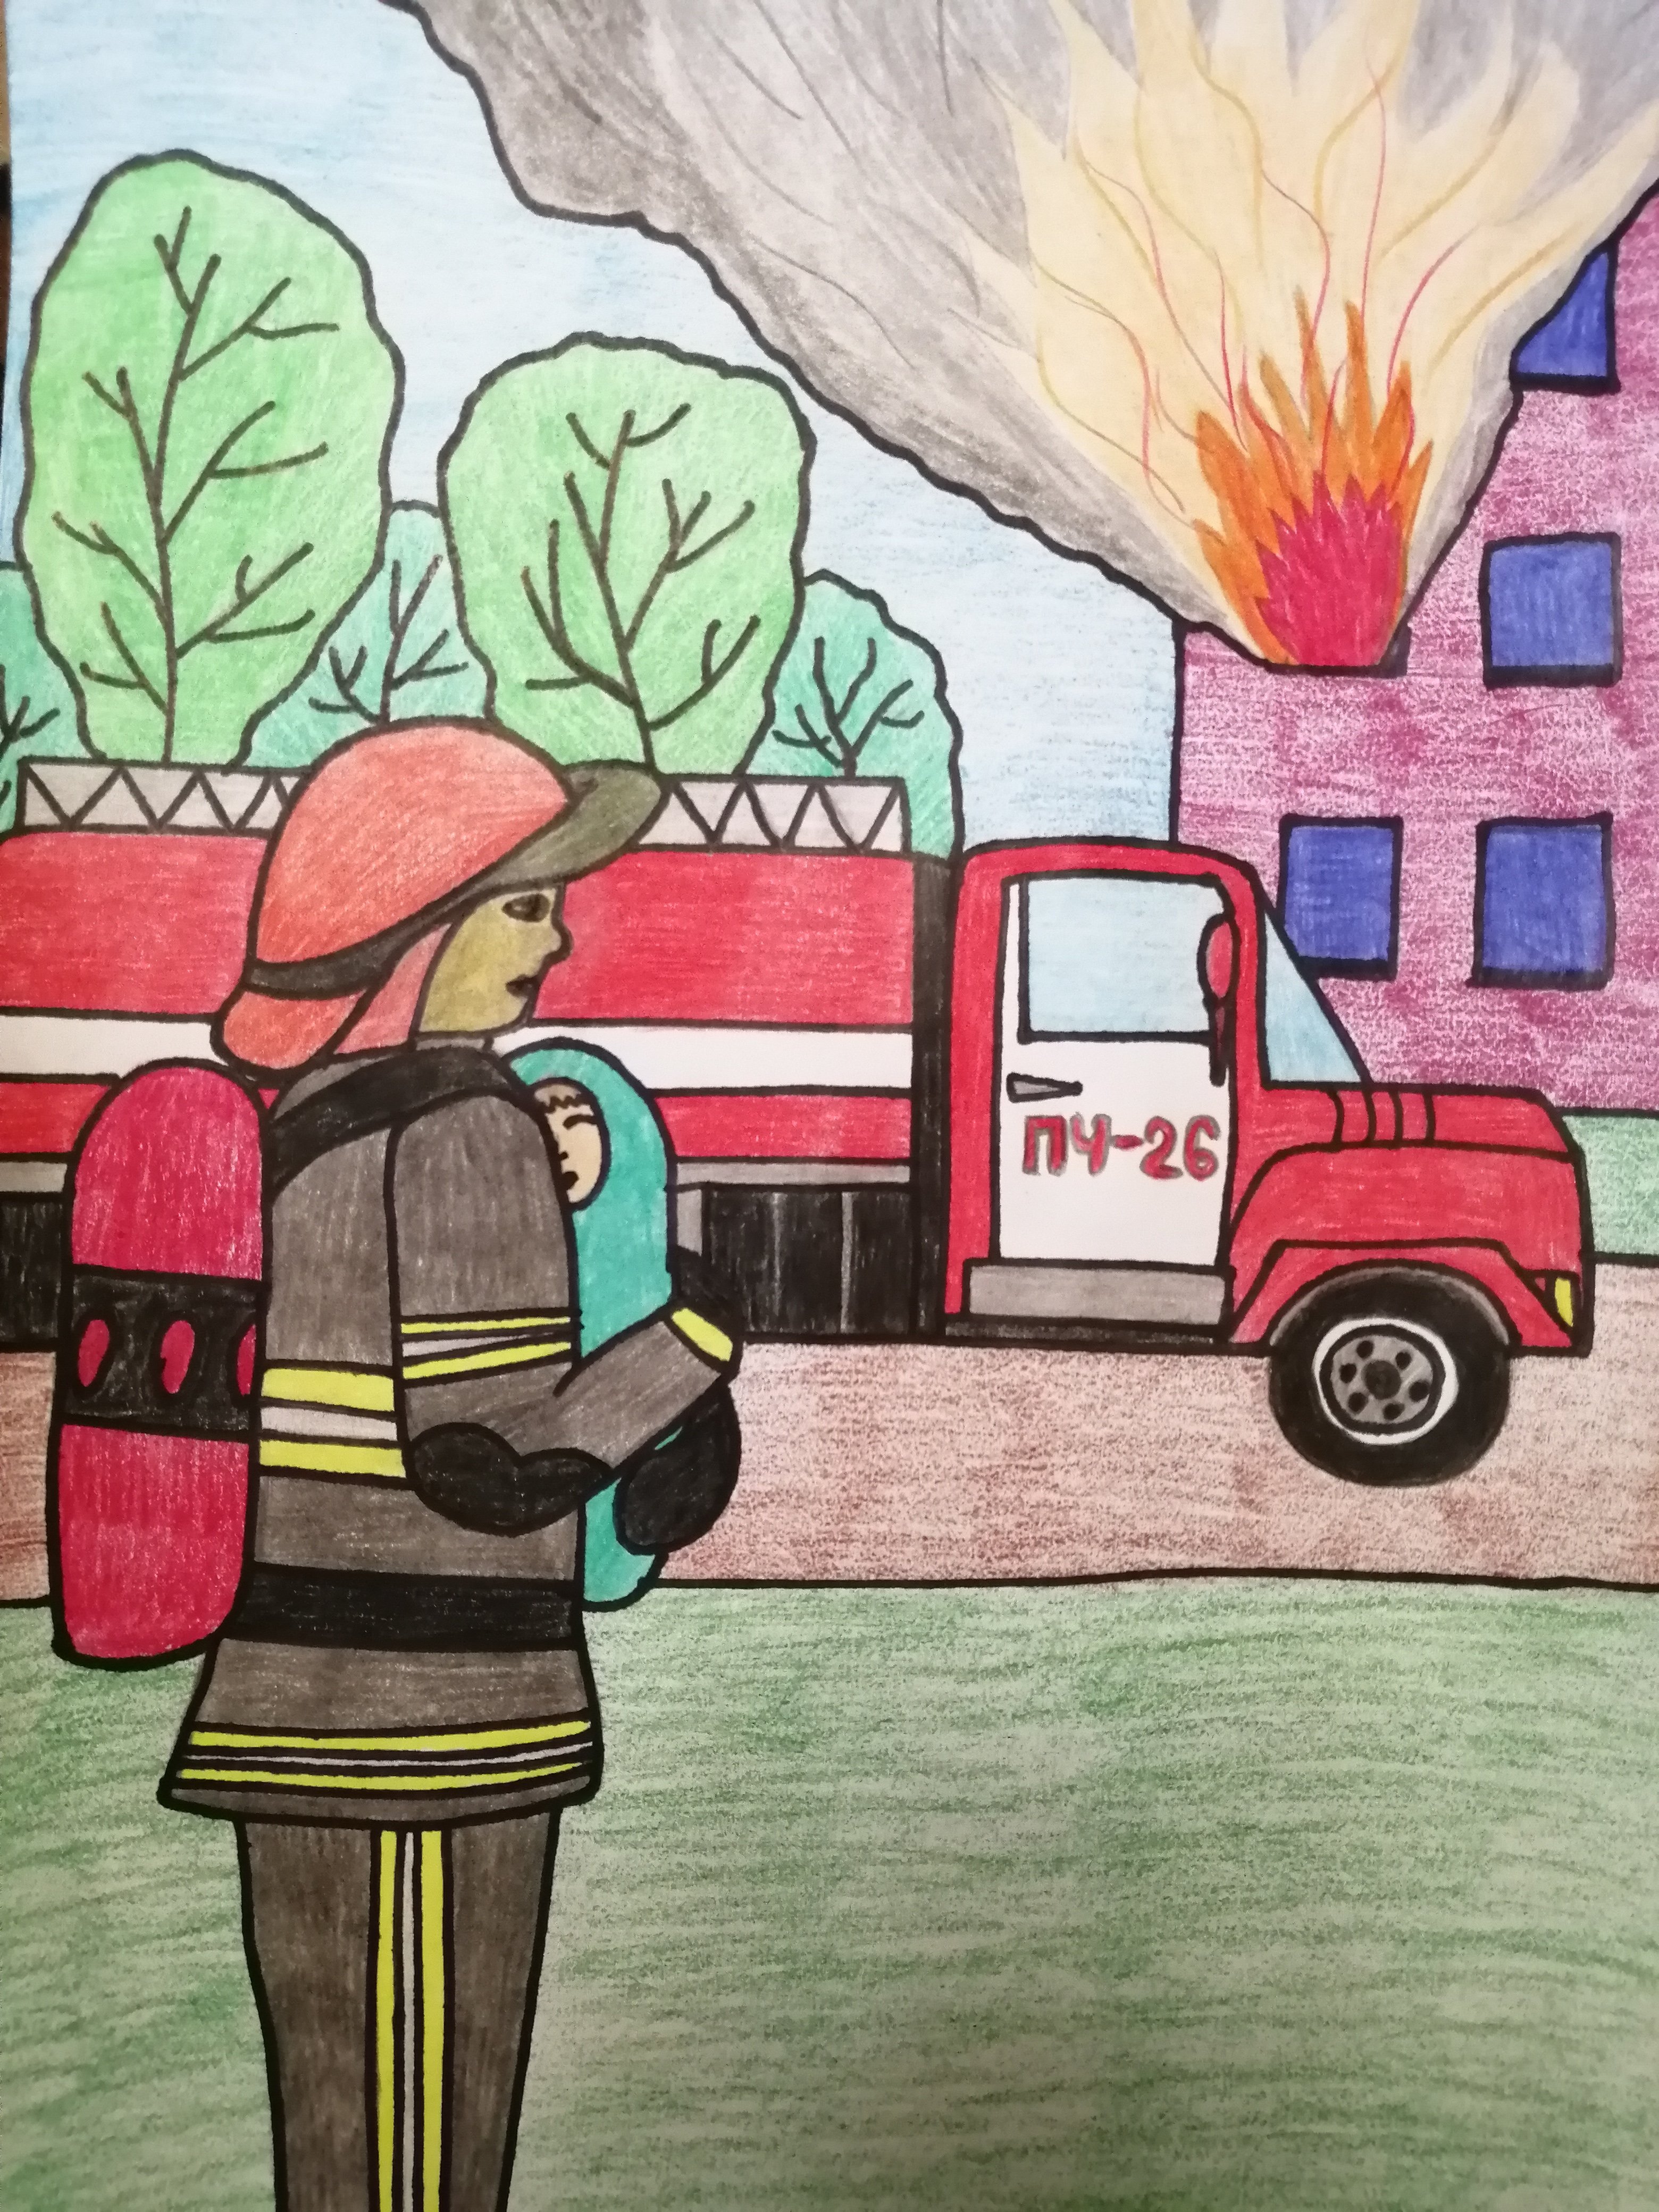 Рисунок на тему пожарная безопасность